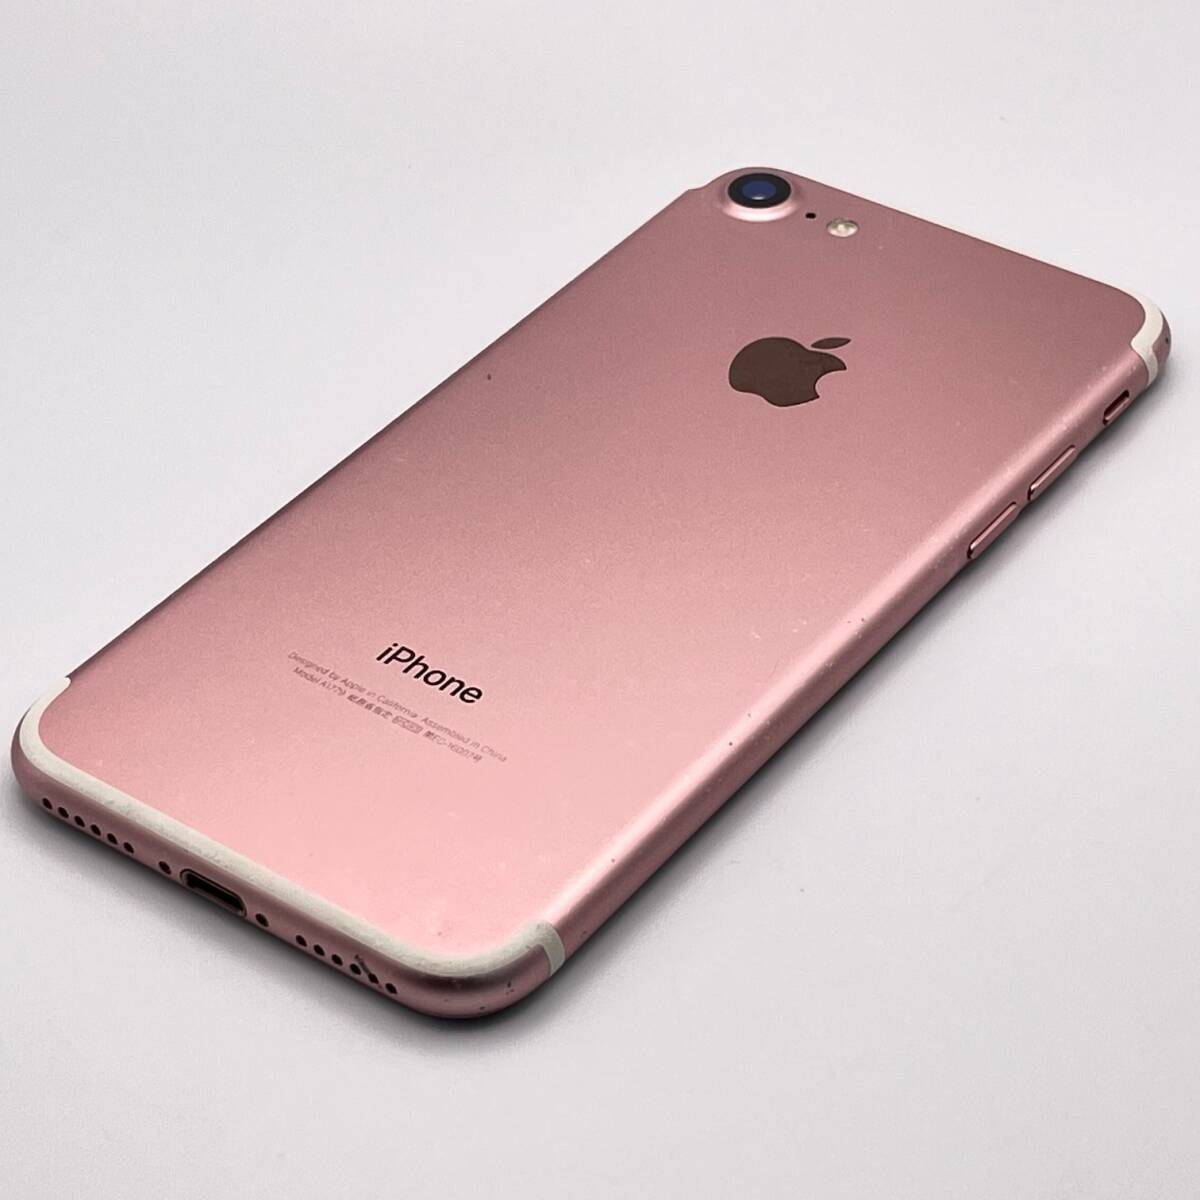  б/у товар Apple Apple iPhone 7 32GB rose Gold SIM разблокирован .SIM свободный 1 иен из распродажа 